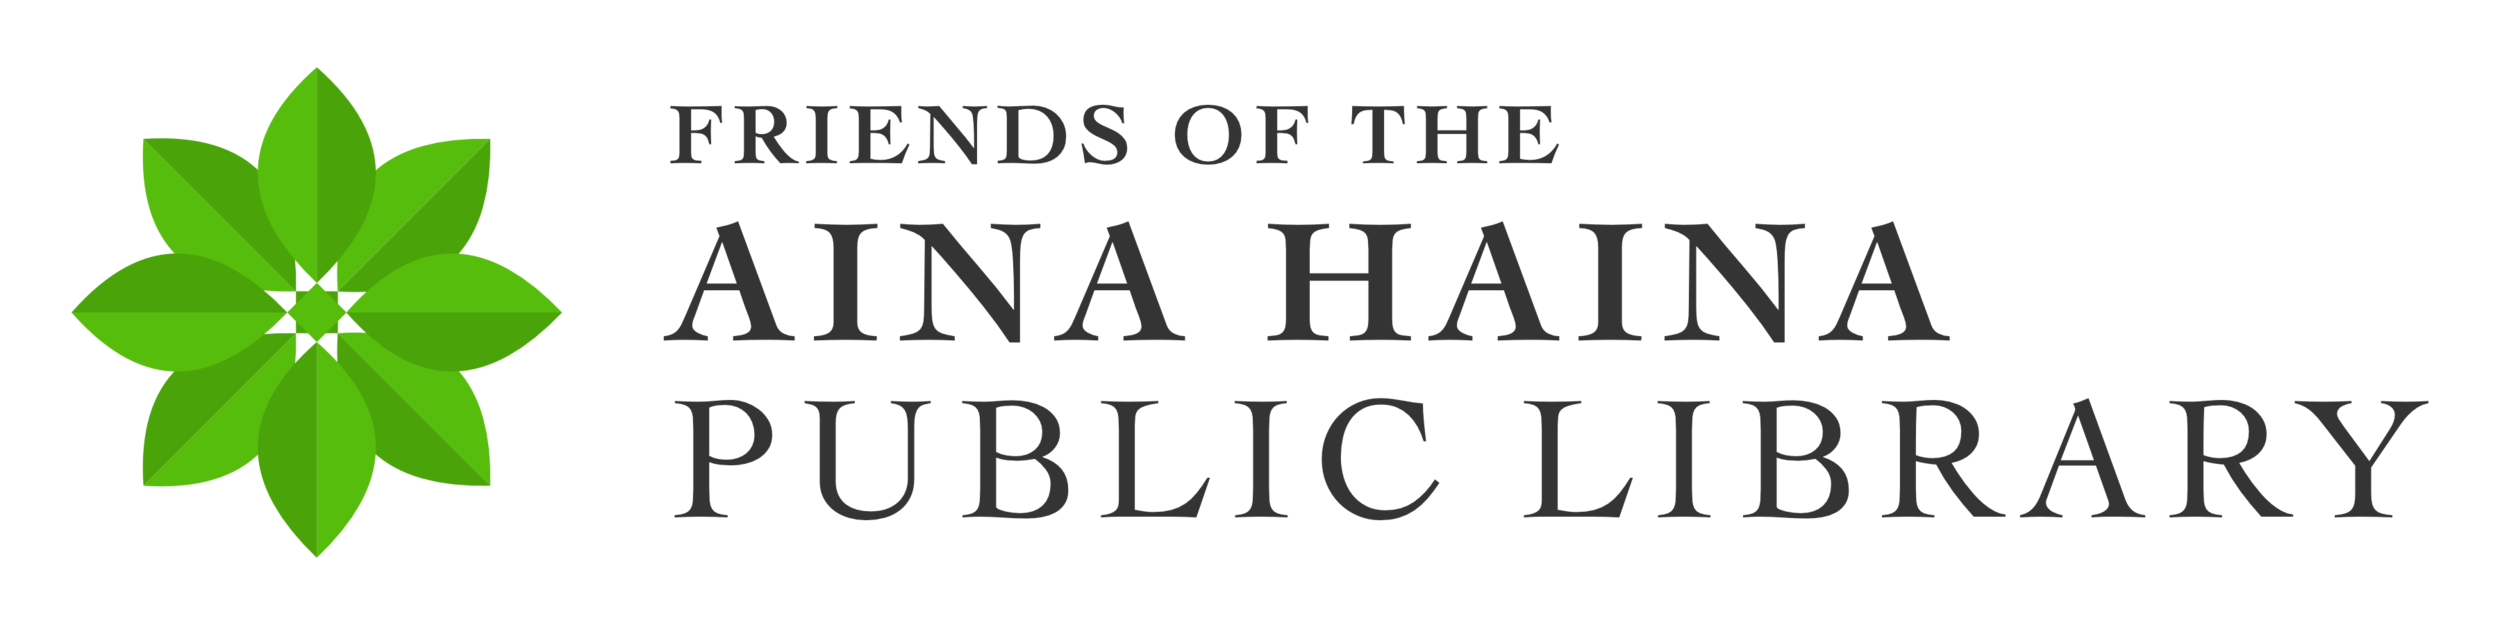 Aina Haina Public Library